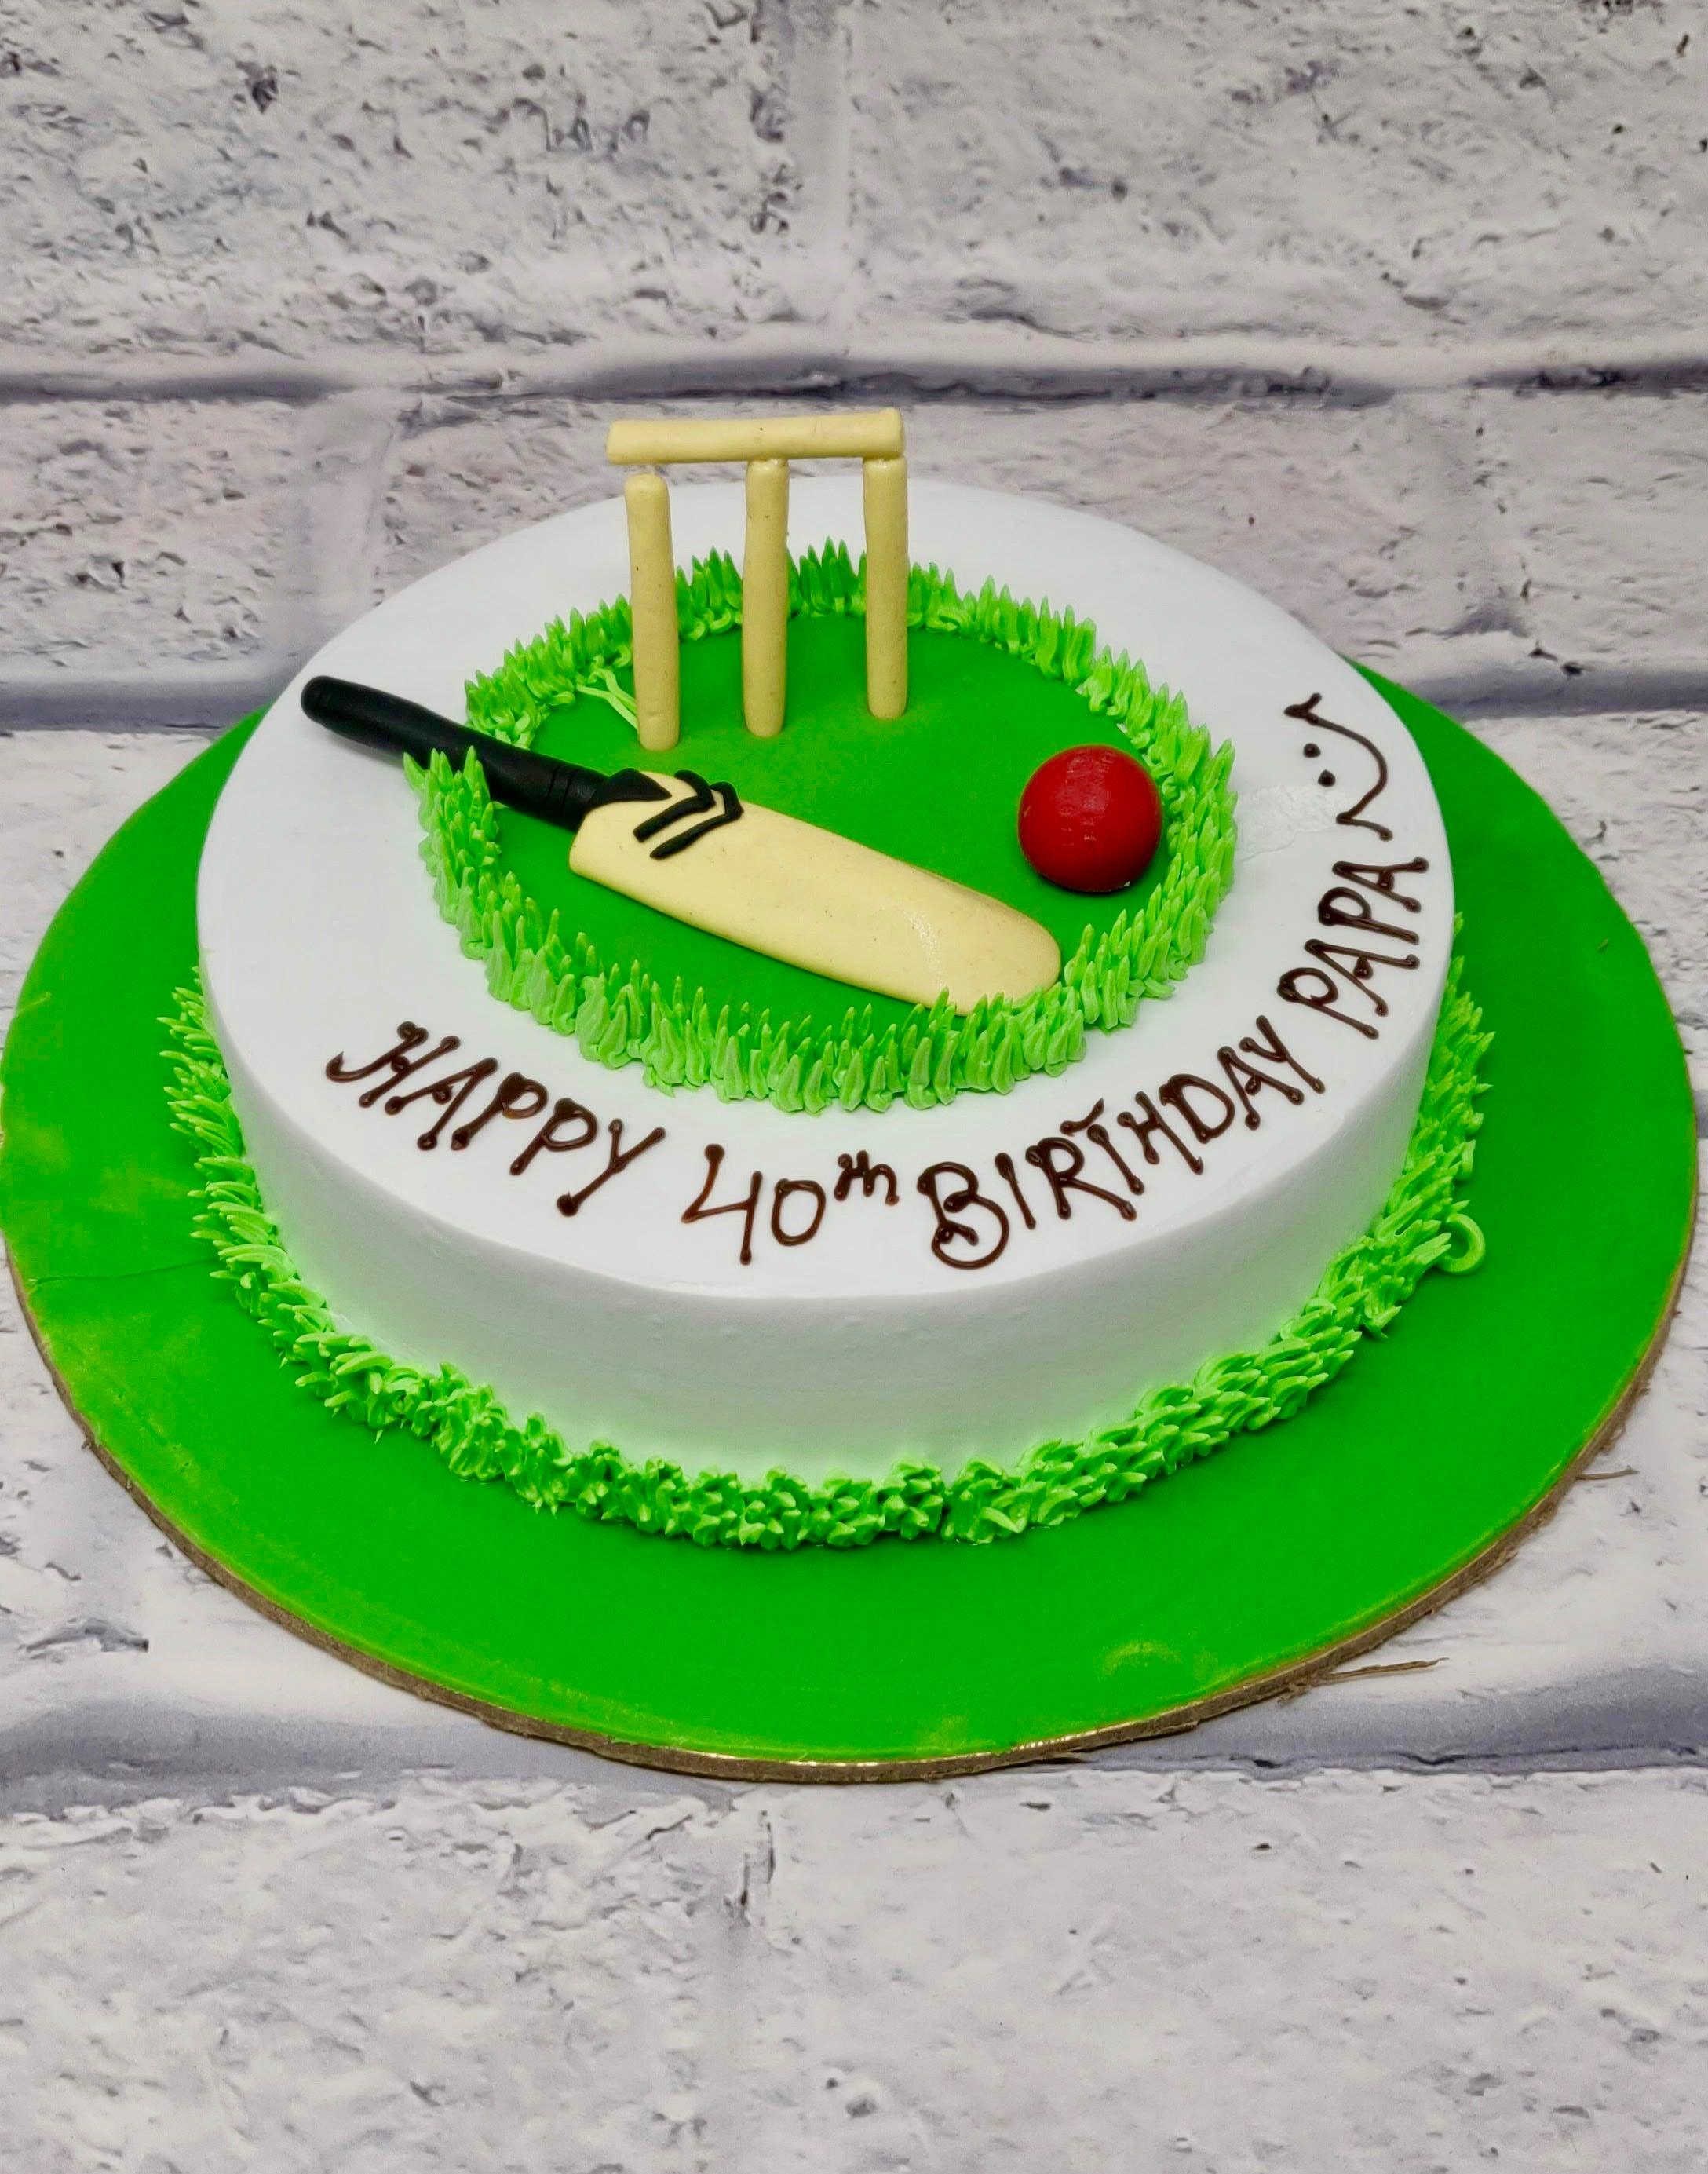 Cricket Fan Theme Cake|Customized Cake Shop in Hyderabad|CakeSmash.i